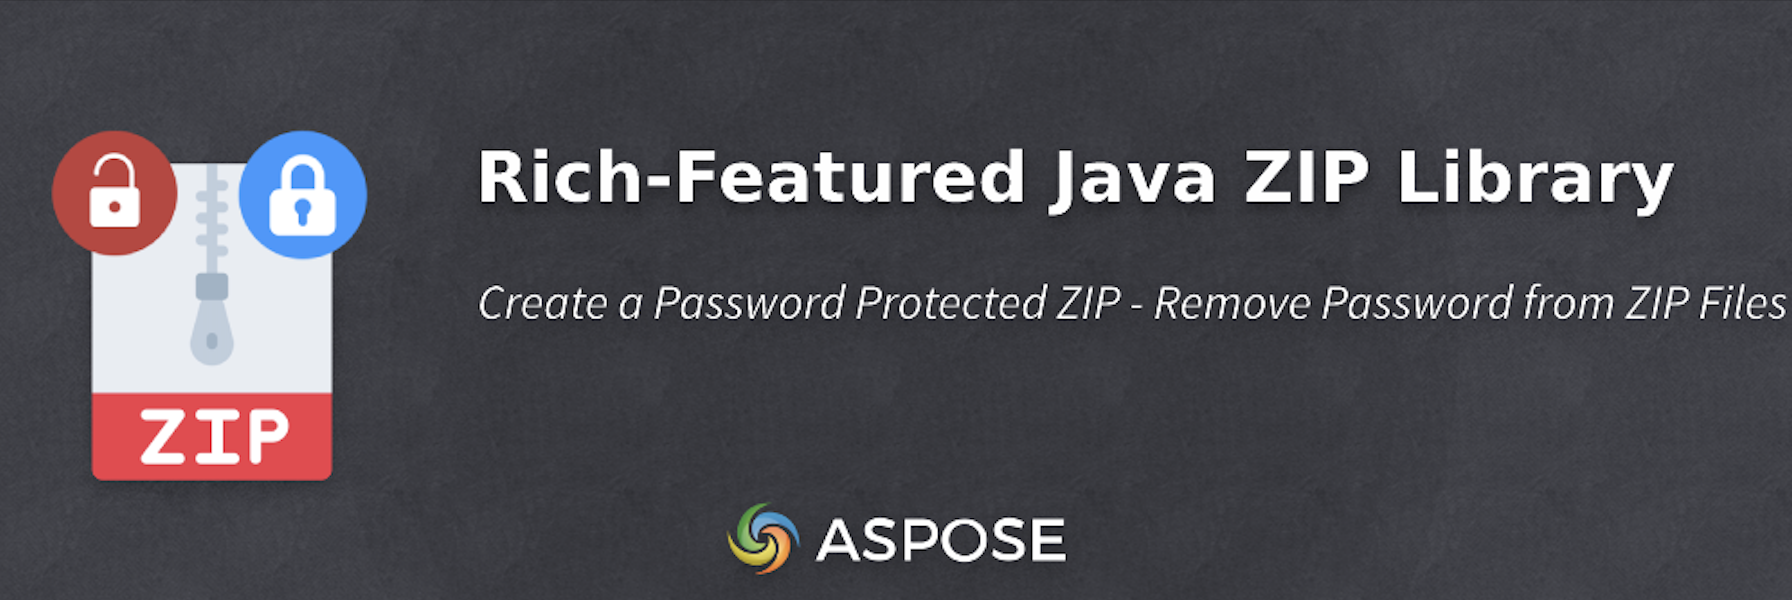 Java ZIP API を使用してパスワード保護された ZIP を作成する